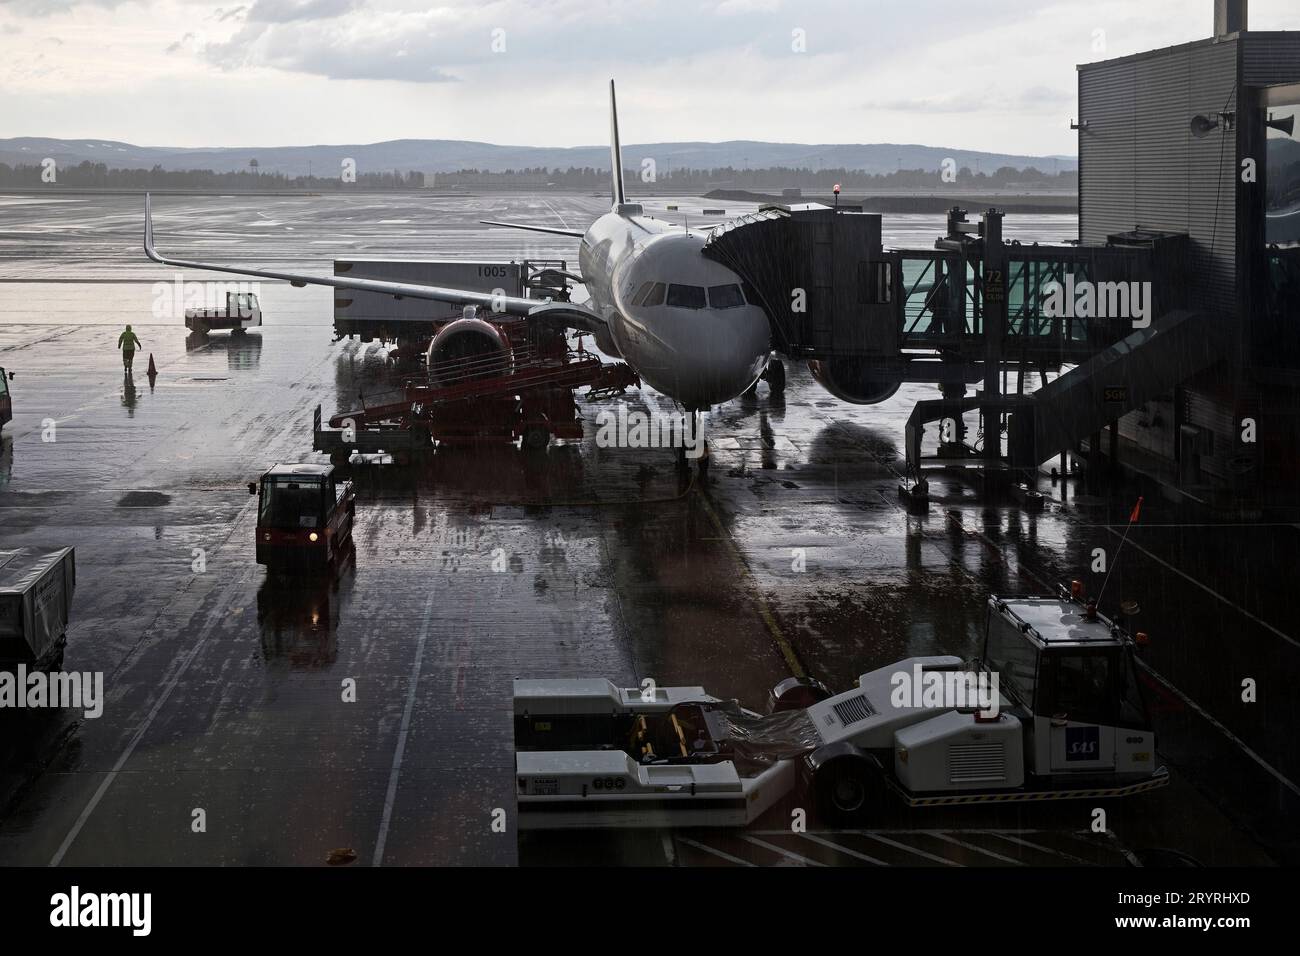 Condizioni difficili a causa di forti piogge all'aeroporto durante il carico di un aeromobile, Oslo, Norvegia, Europa Foto Stock